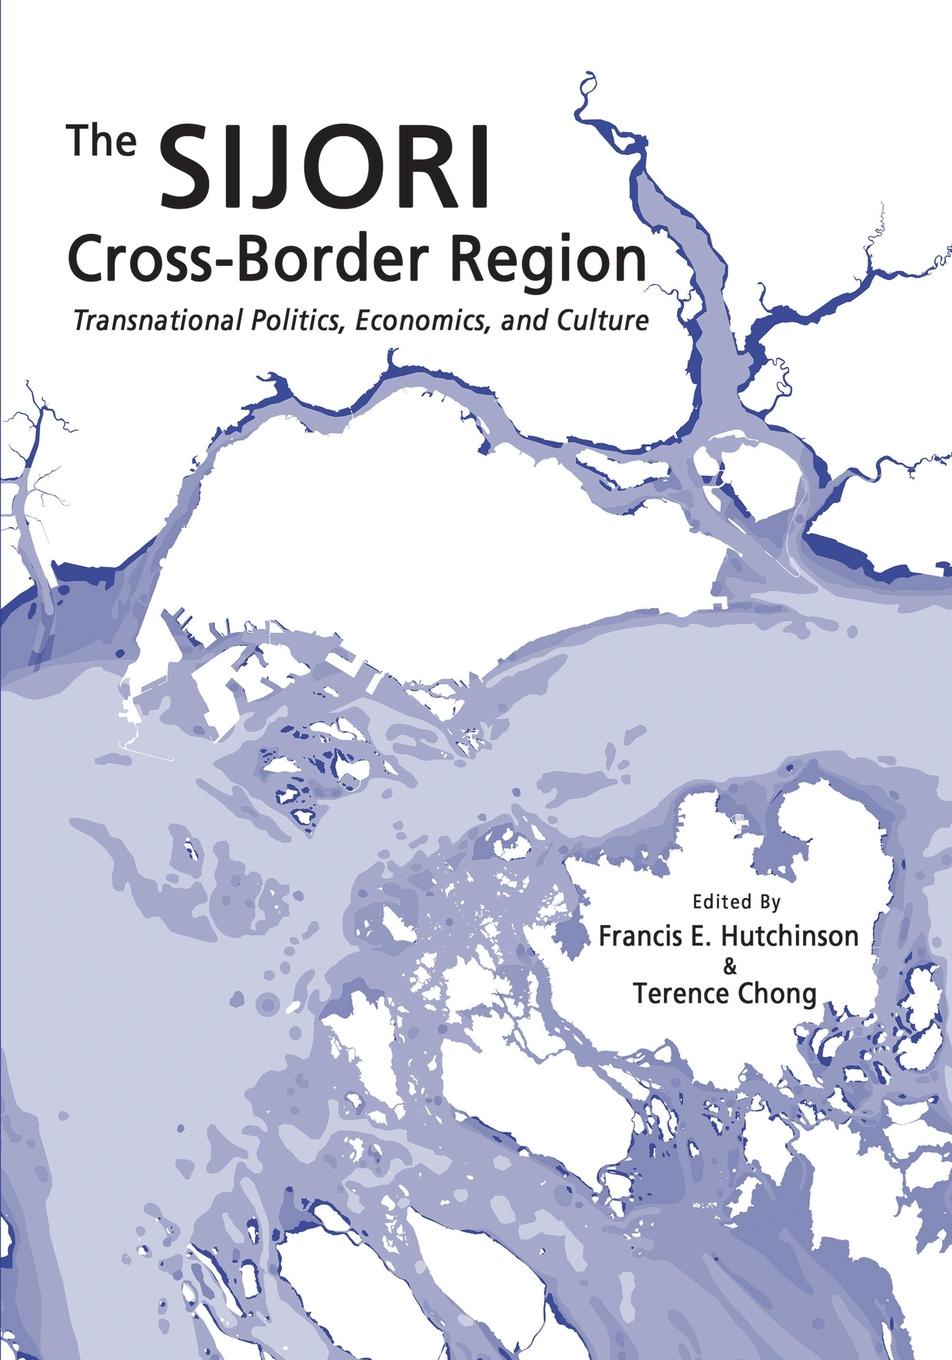 Border region